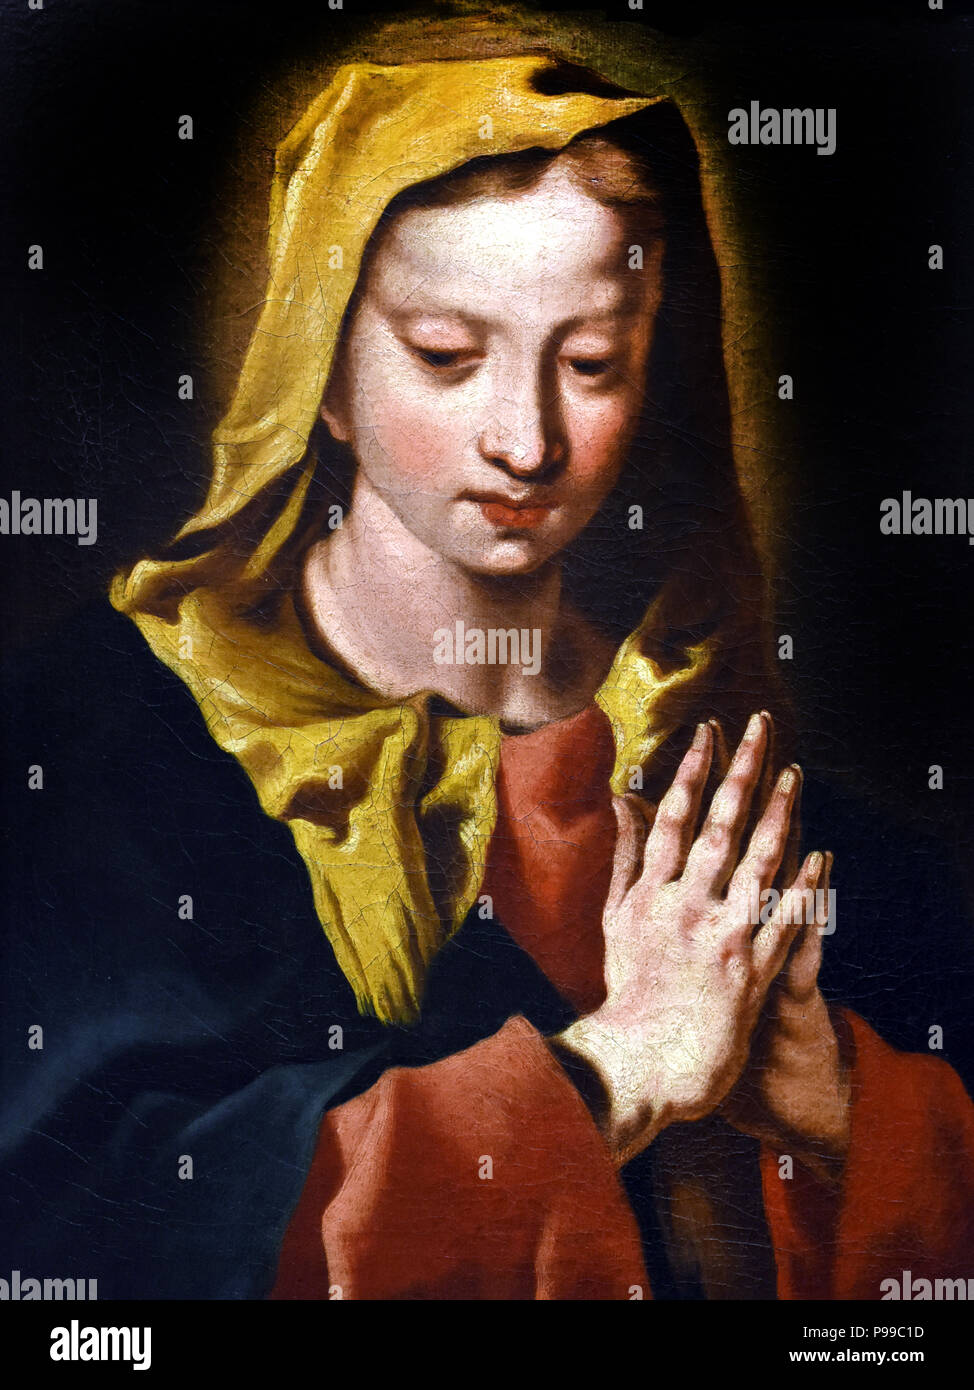 Vergine Maria da Nicolò Grassi - Nicola Grassi (1682 - 1748), pittore italiano, attivo in un tardo-barocco o in stile rococò, Italia. Foto Stock